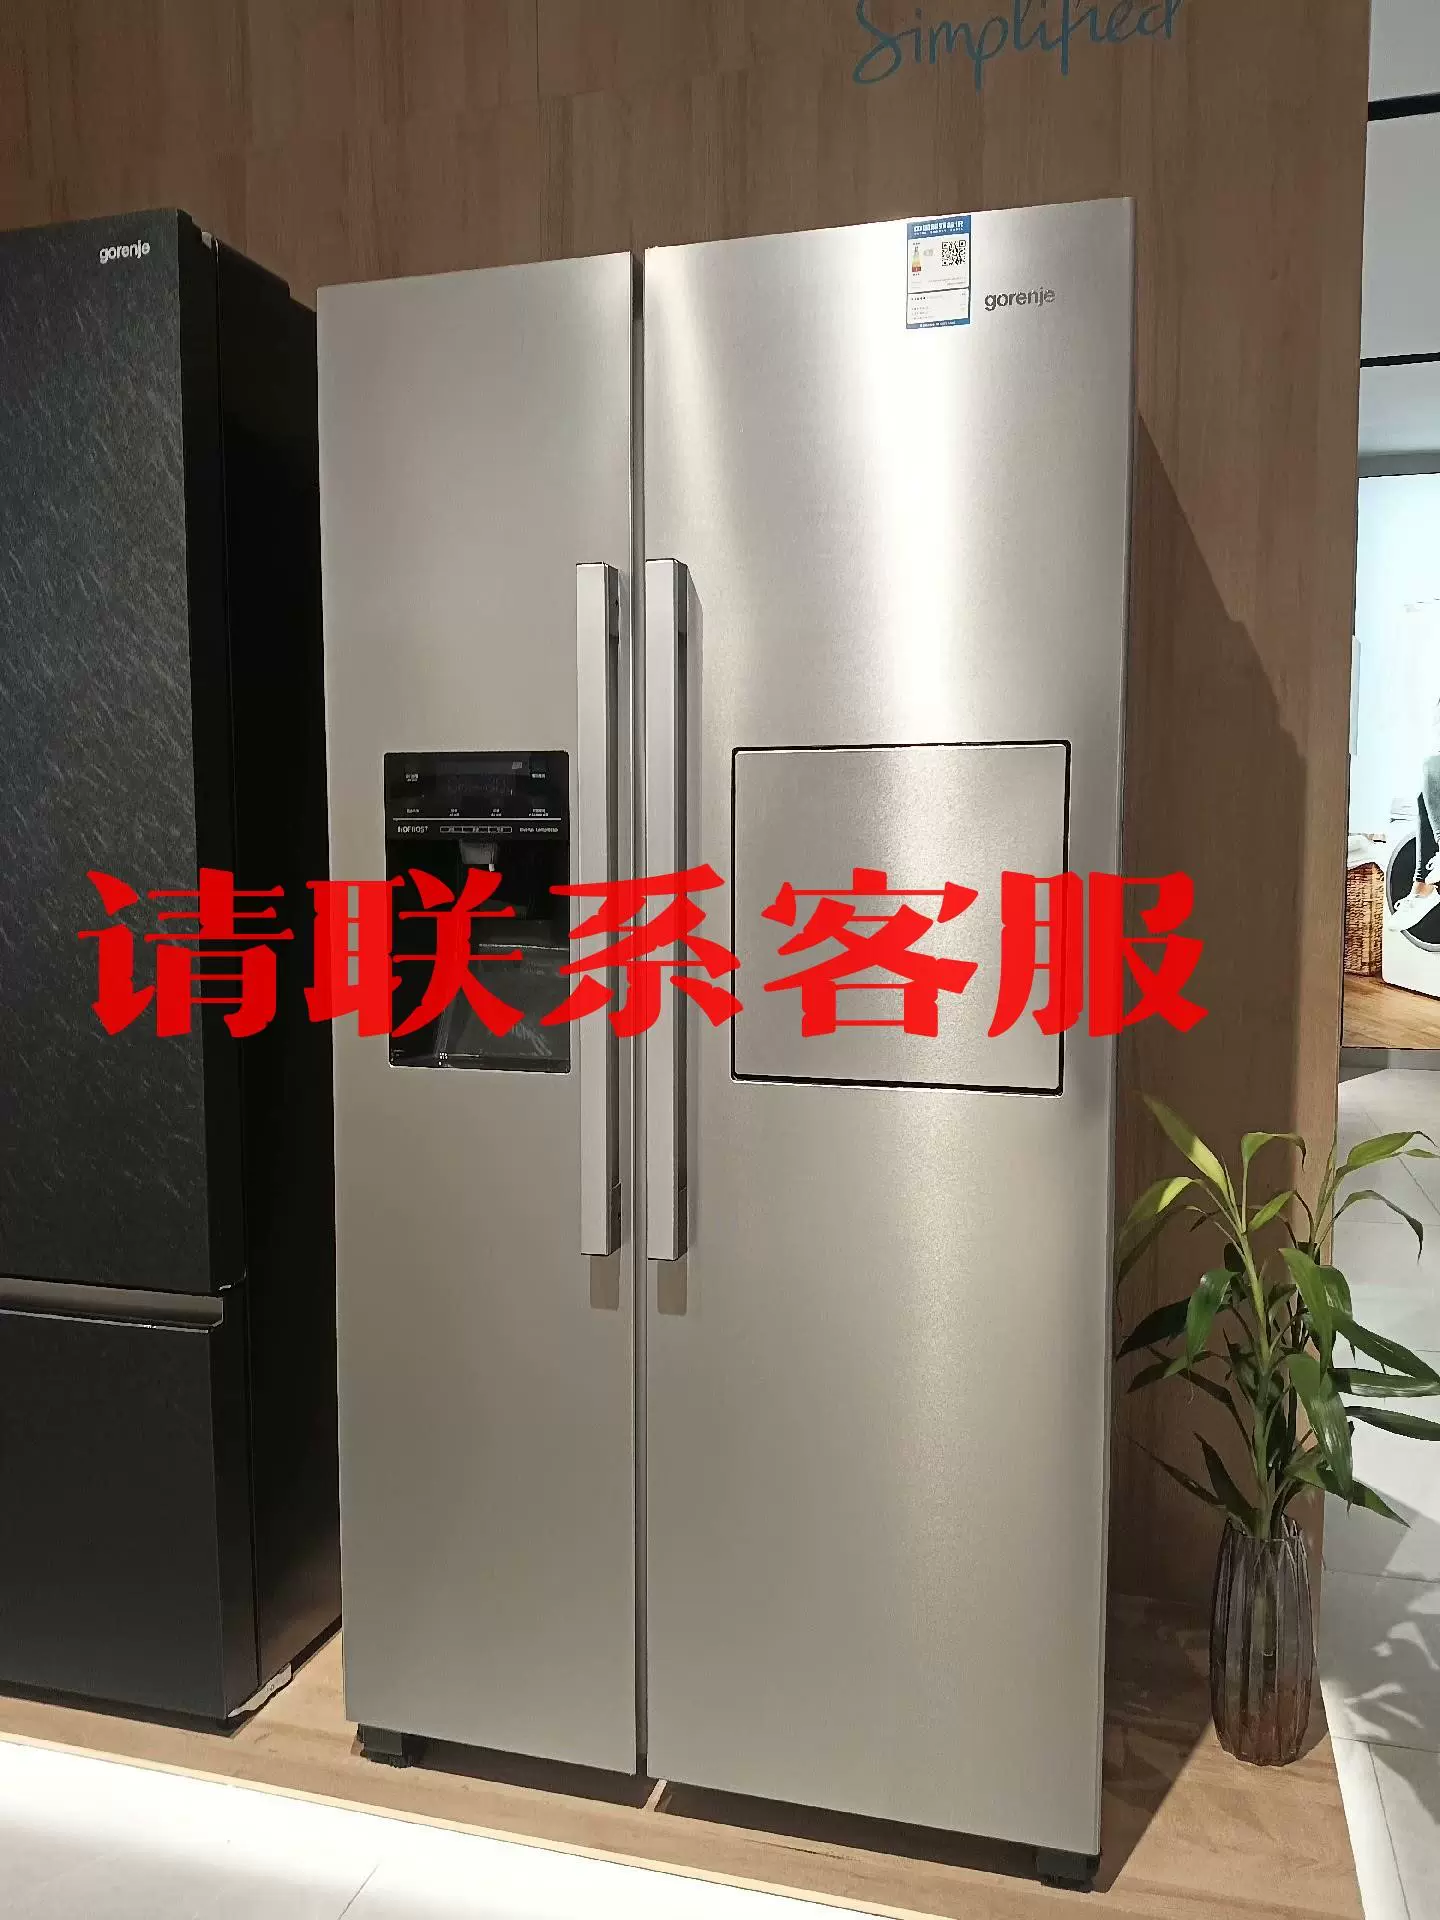 全新样机gorenje独立式冰箱议价出售-Taobao Malaysia